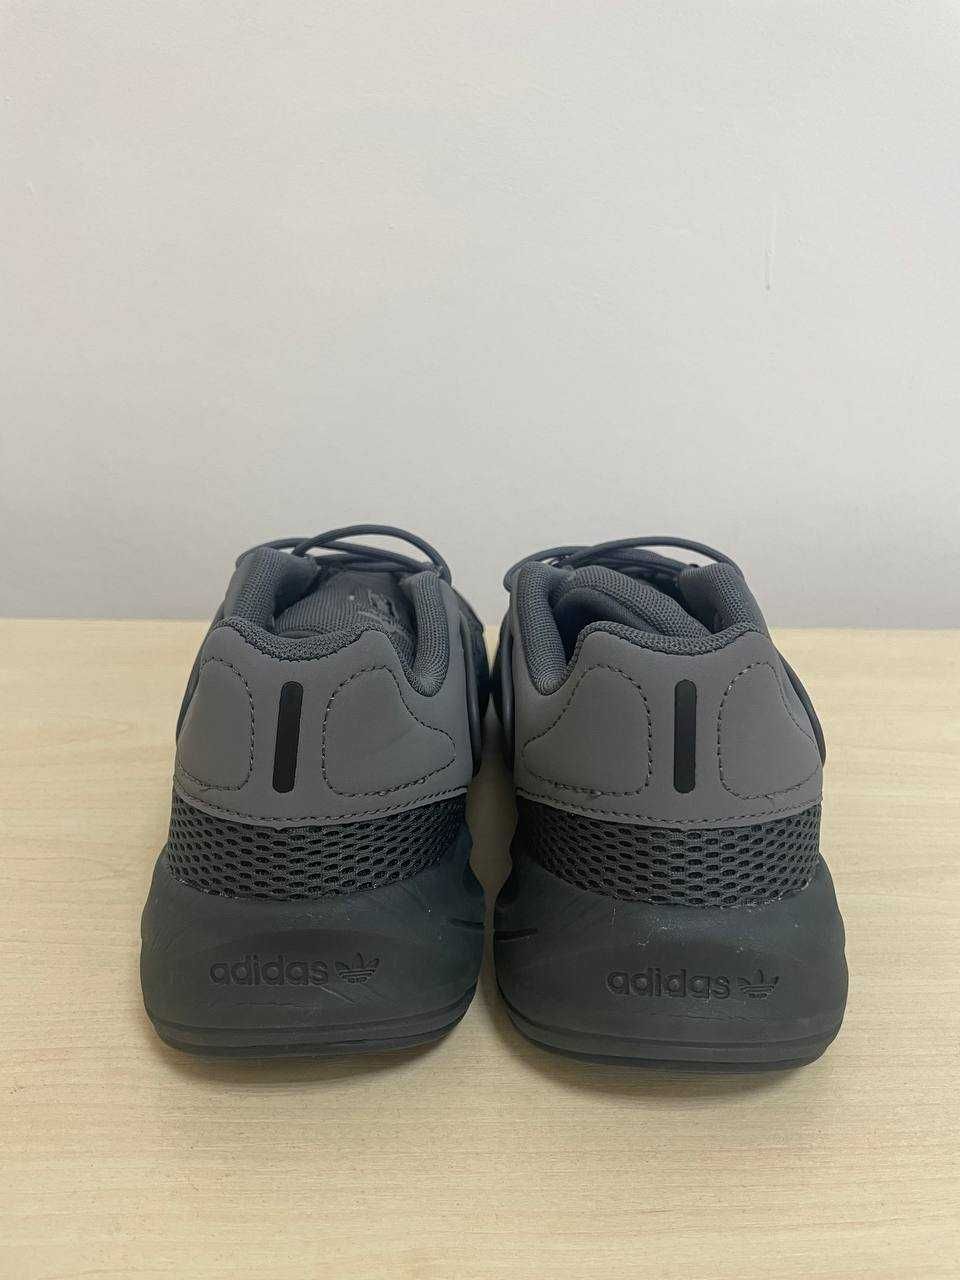 Оригинал! Кроссовки мужские Adidas Ozelia GX3254, разные размеры!